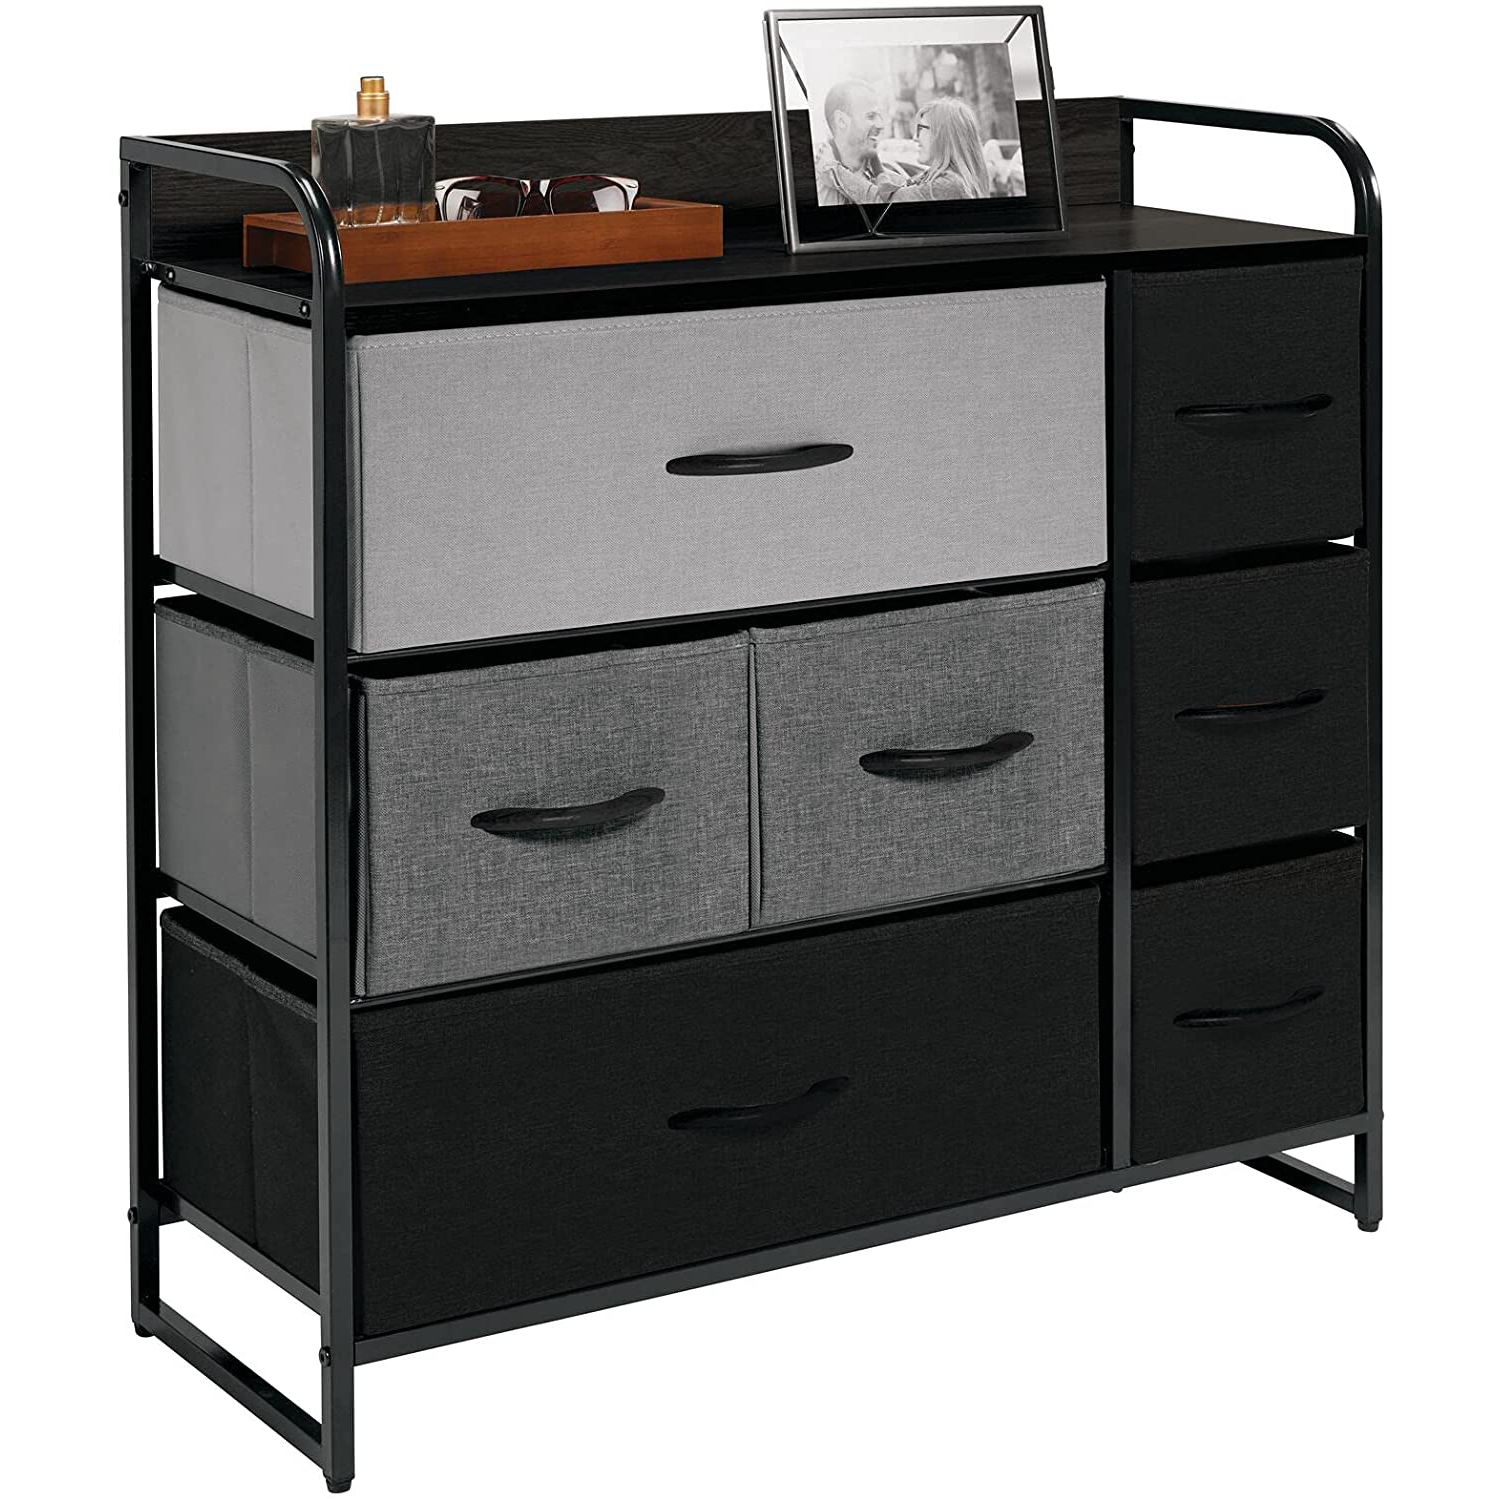 Dresser Storage Furniture Organizer - Large Standing Unit